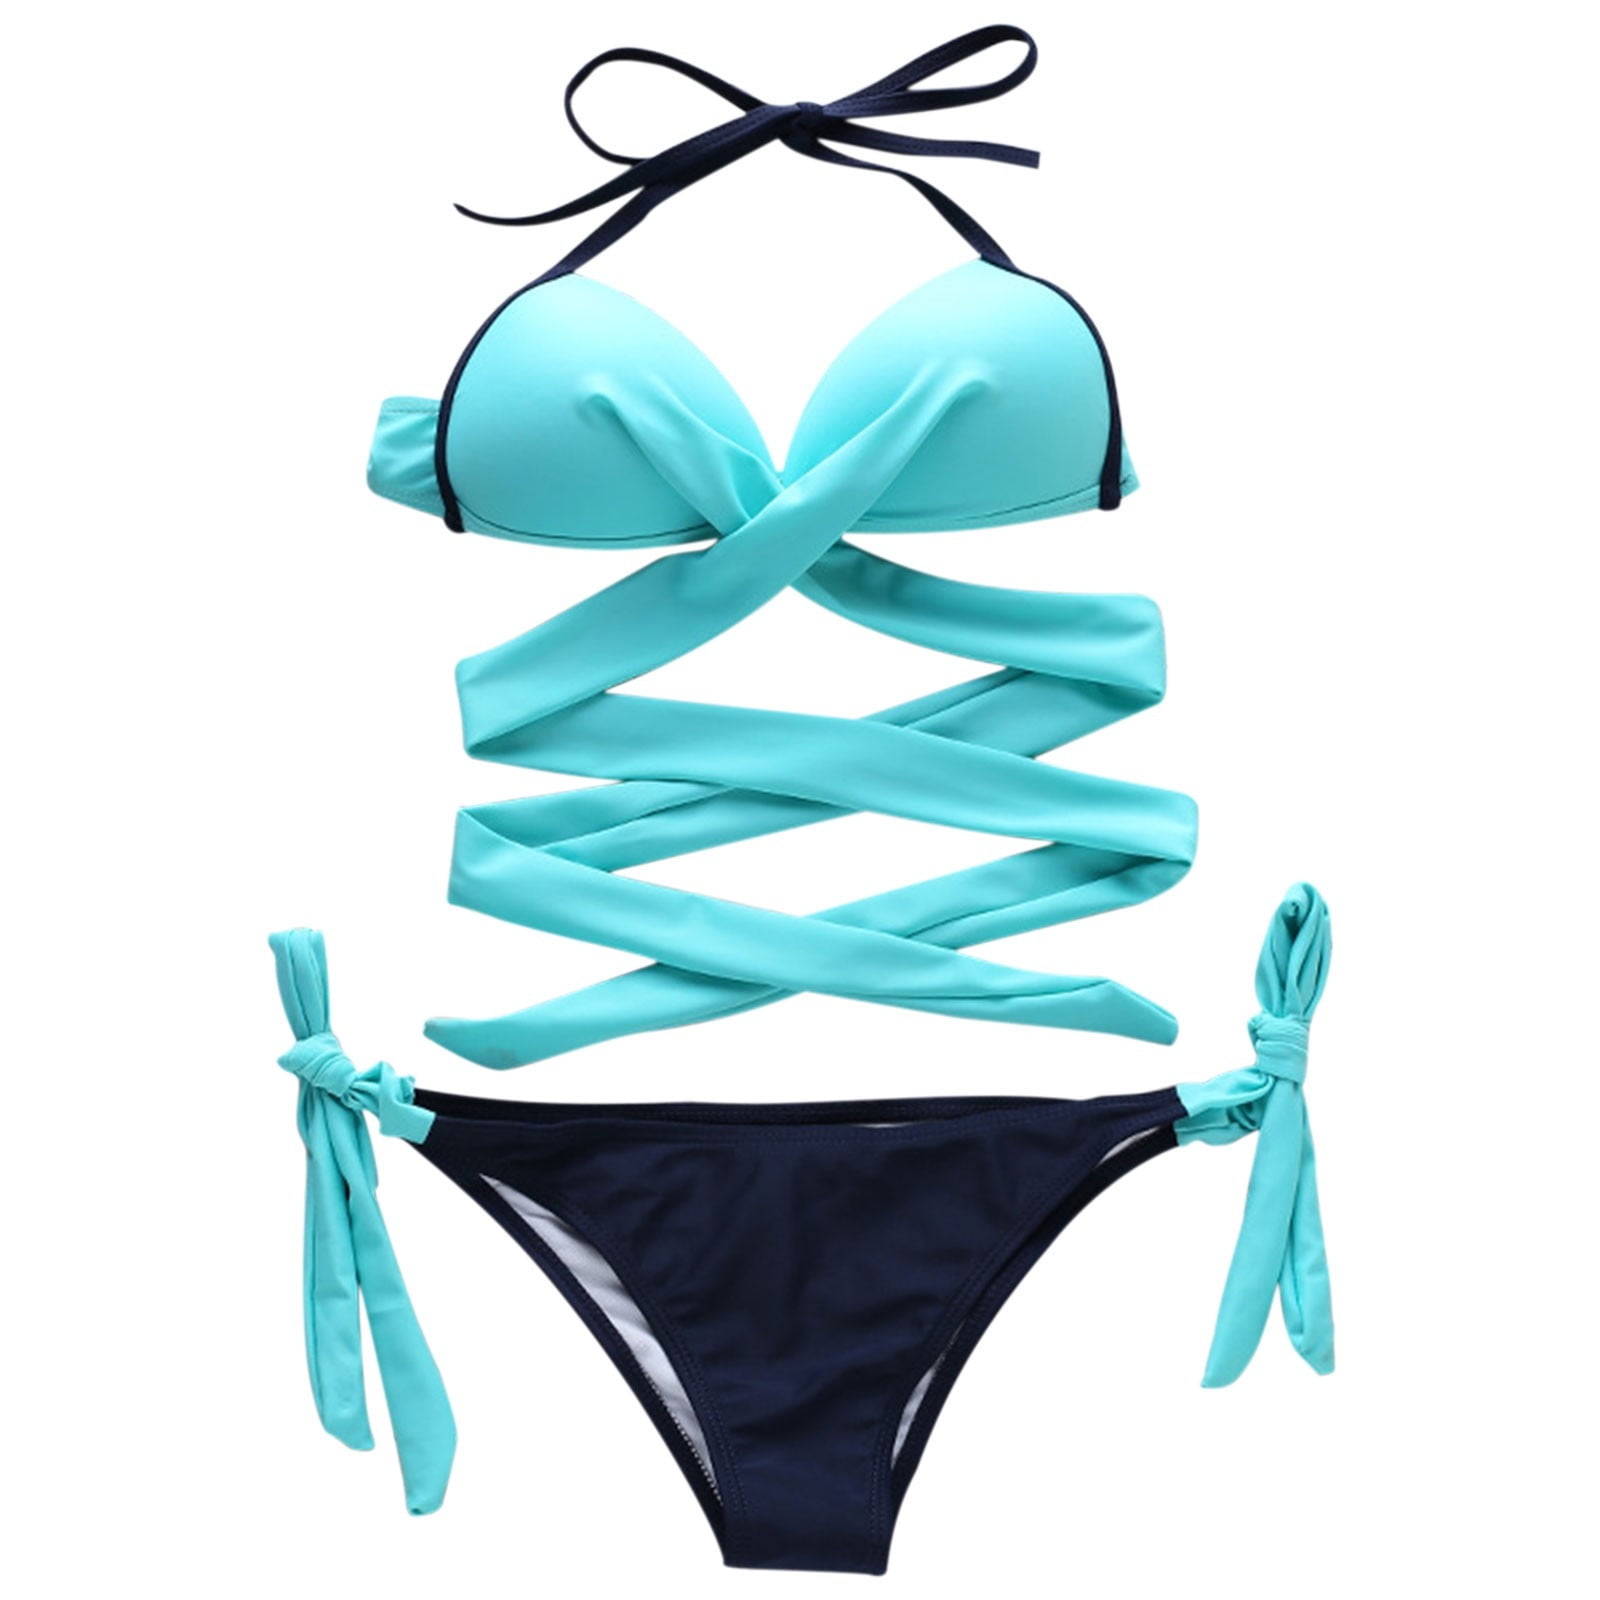 Candie's® Floral Halter Underwire Bikini Top - Juniors